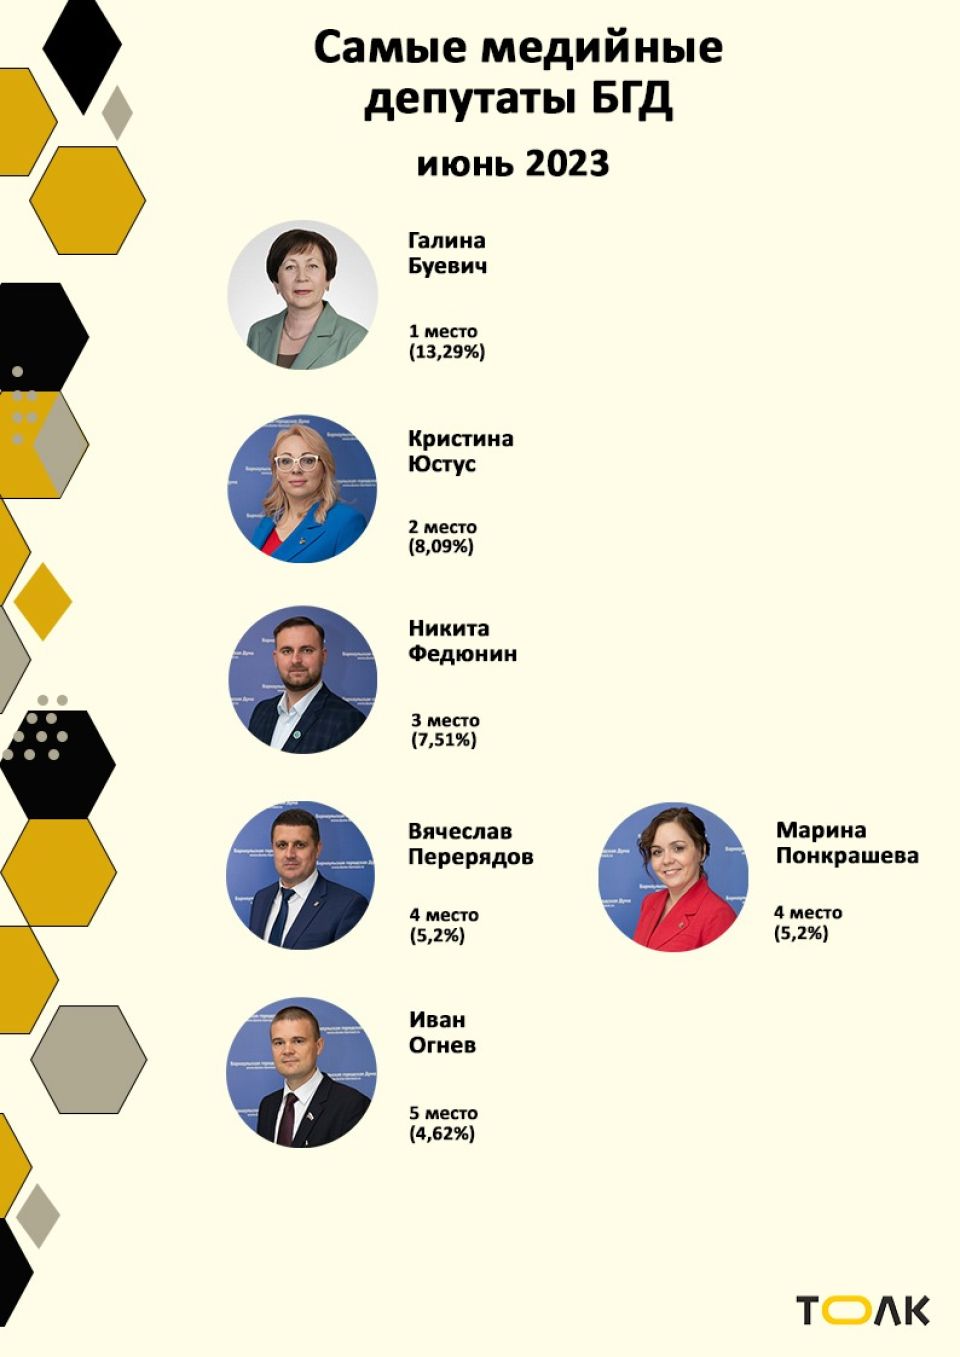 Рейтинг медийности депутатов БГД, июнь 2023 года